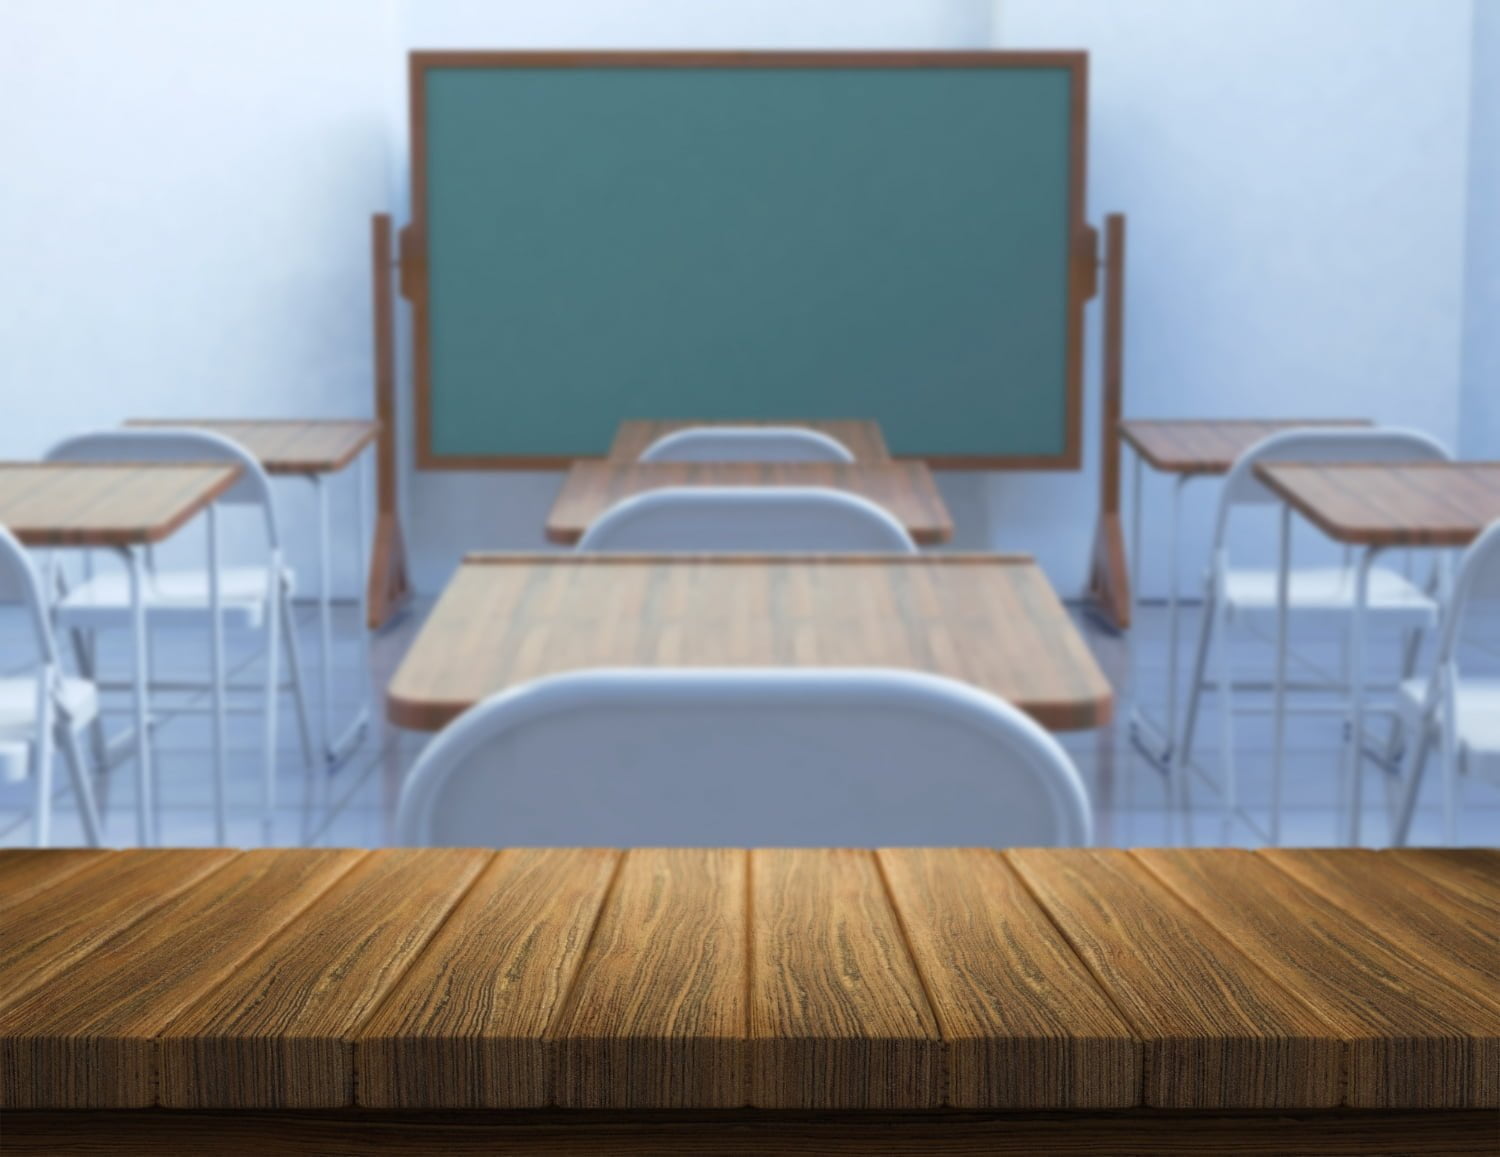 Clan del Golfo amenaza a docentes / útiles escolares